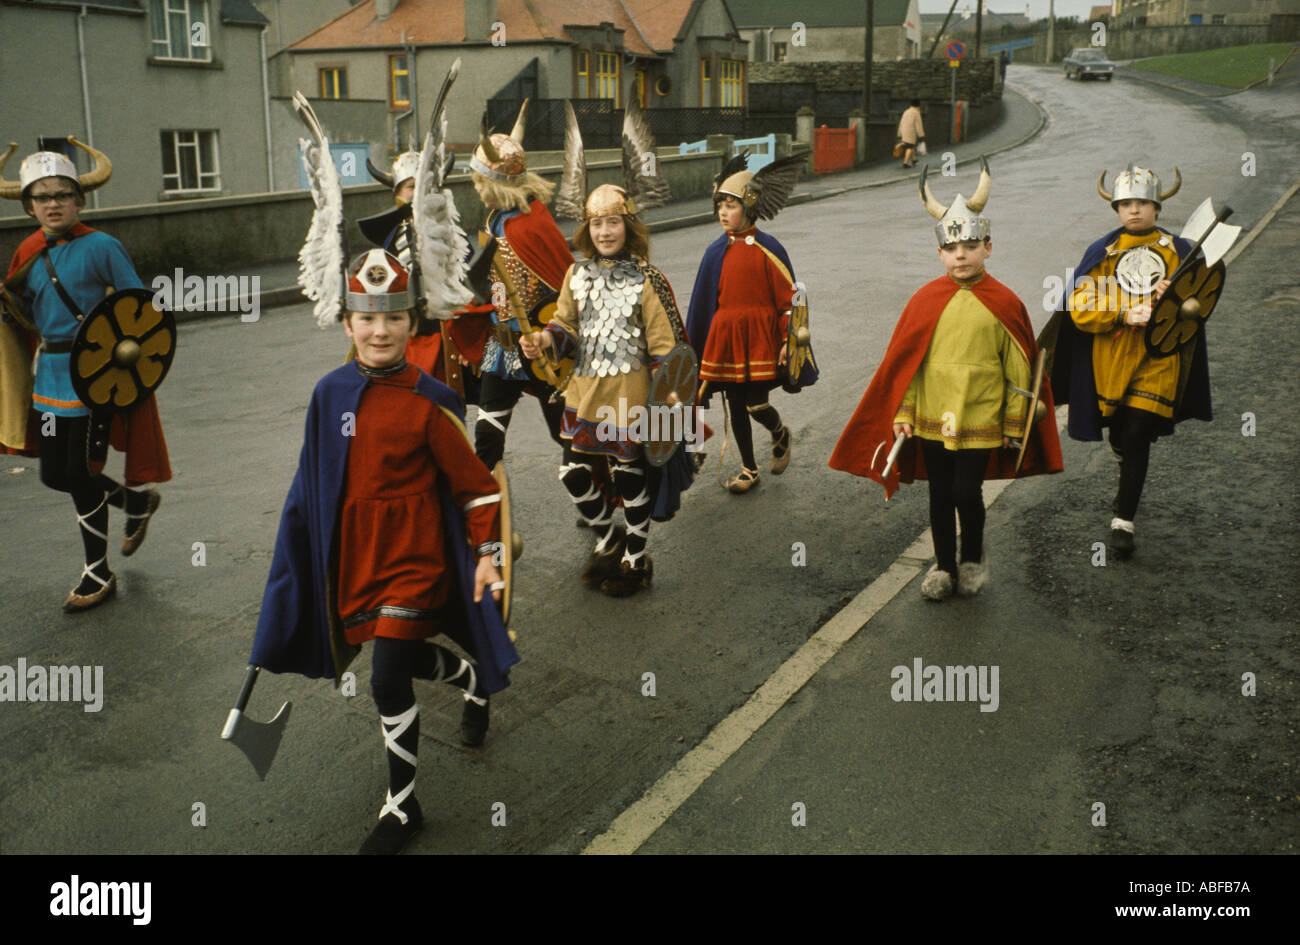 Kinder ziehen durch die Straßen beim Up Helly AA Lerwick Shetlands Scotland Celebration des Midwinter Festivals im alten Stil der 1970er Jahre UK HOMER SYKES Stockfoto